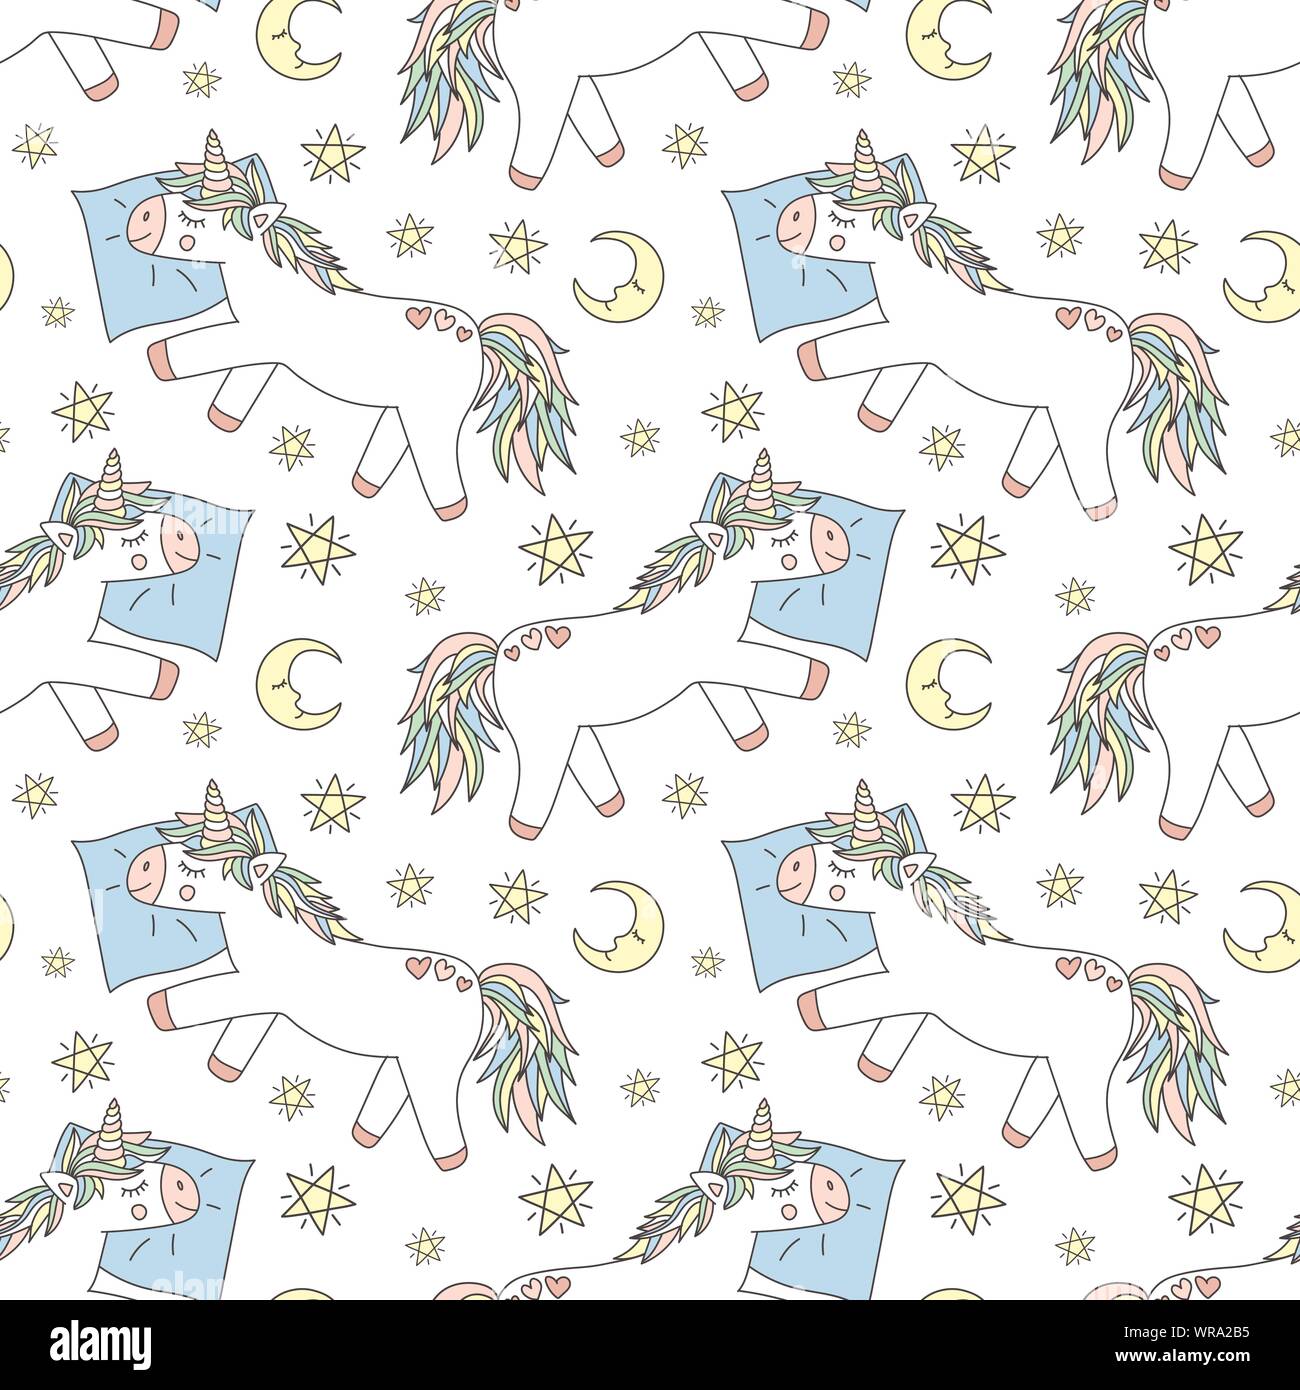 Modello senza giunture di disegnati a mano unicorns dormire su un cuscino con la luna e le stelle. Vettore di immagine di sfondo per le stampe per pigiami, texture, vacanze Illustrazione Vettoriale